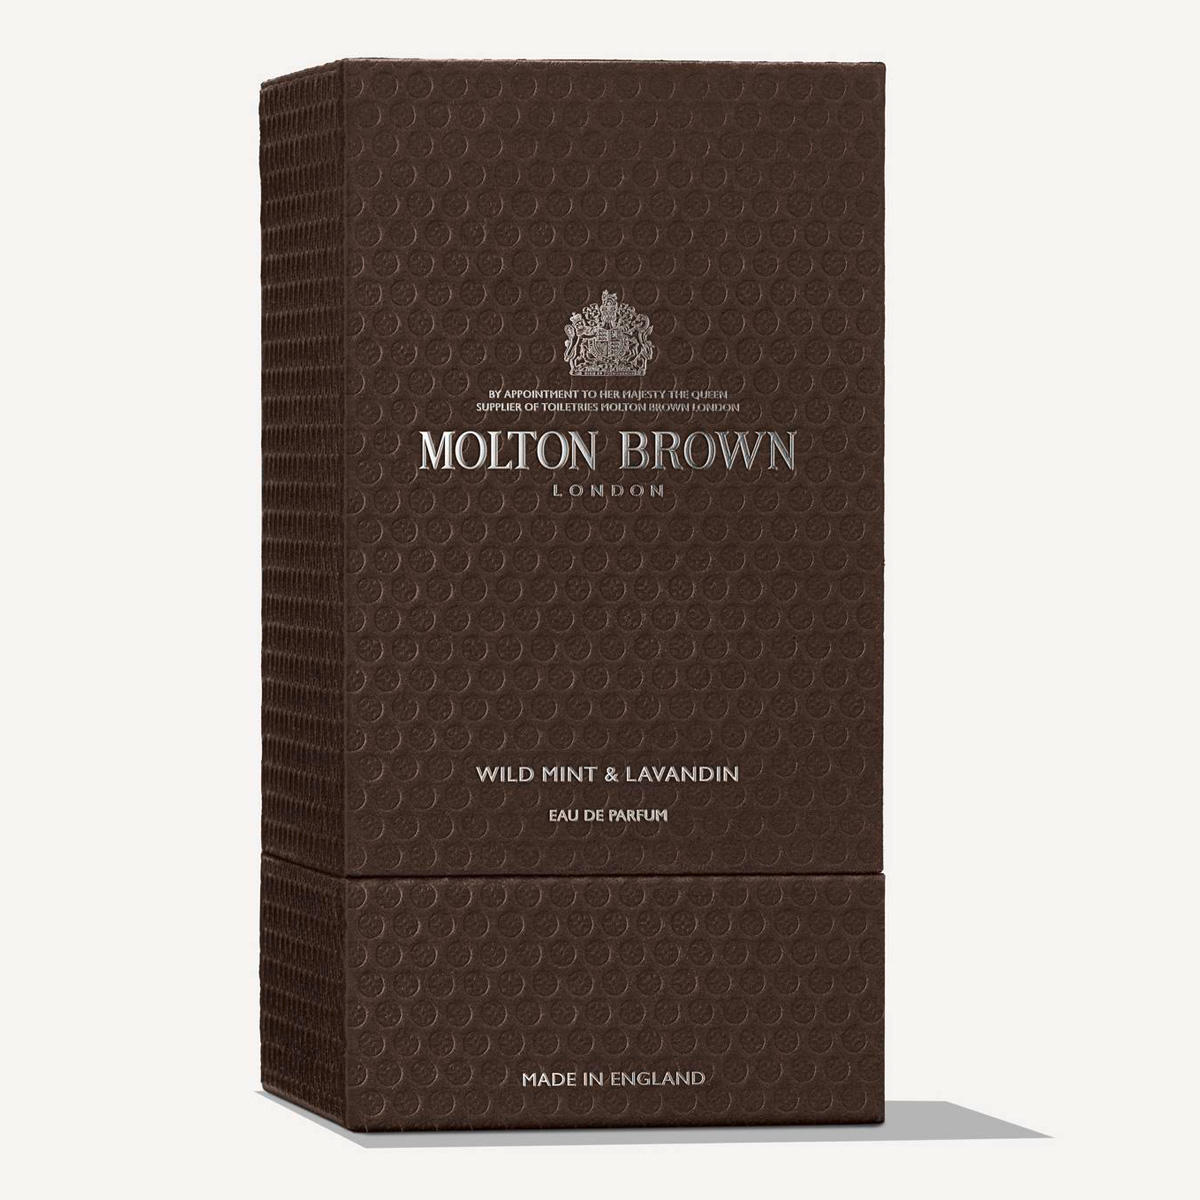 MOLTON BROWN Wild Mint & Lavandin Eau de Parfum 100 ml - 3